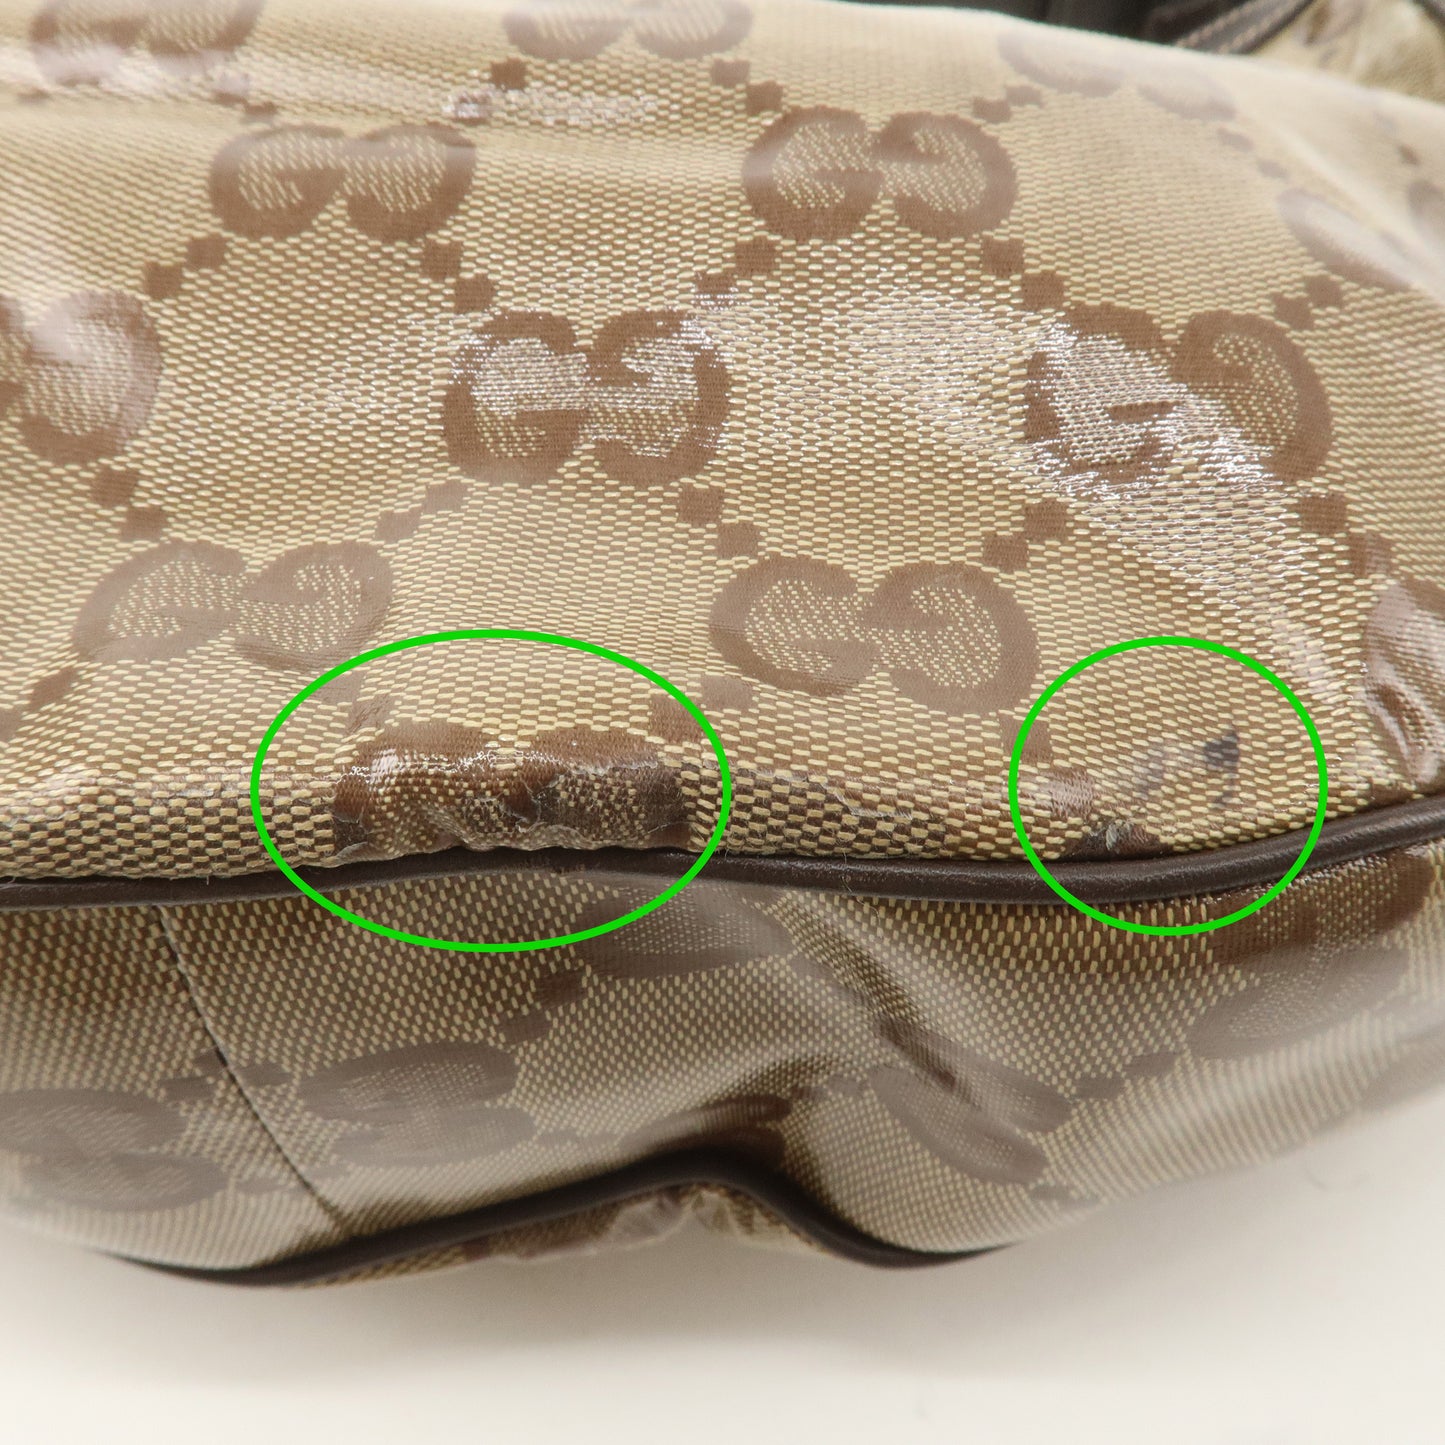 GUCCI GG Crystal Leather Shoulder Bag Beige * Outlet * 257297